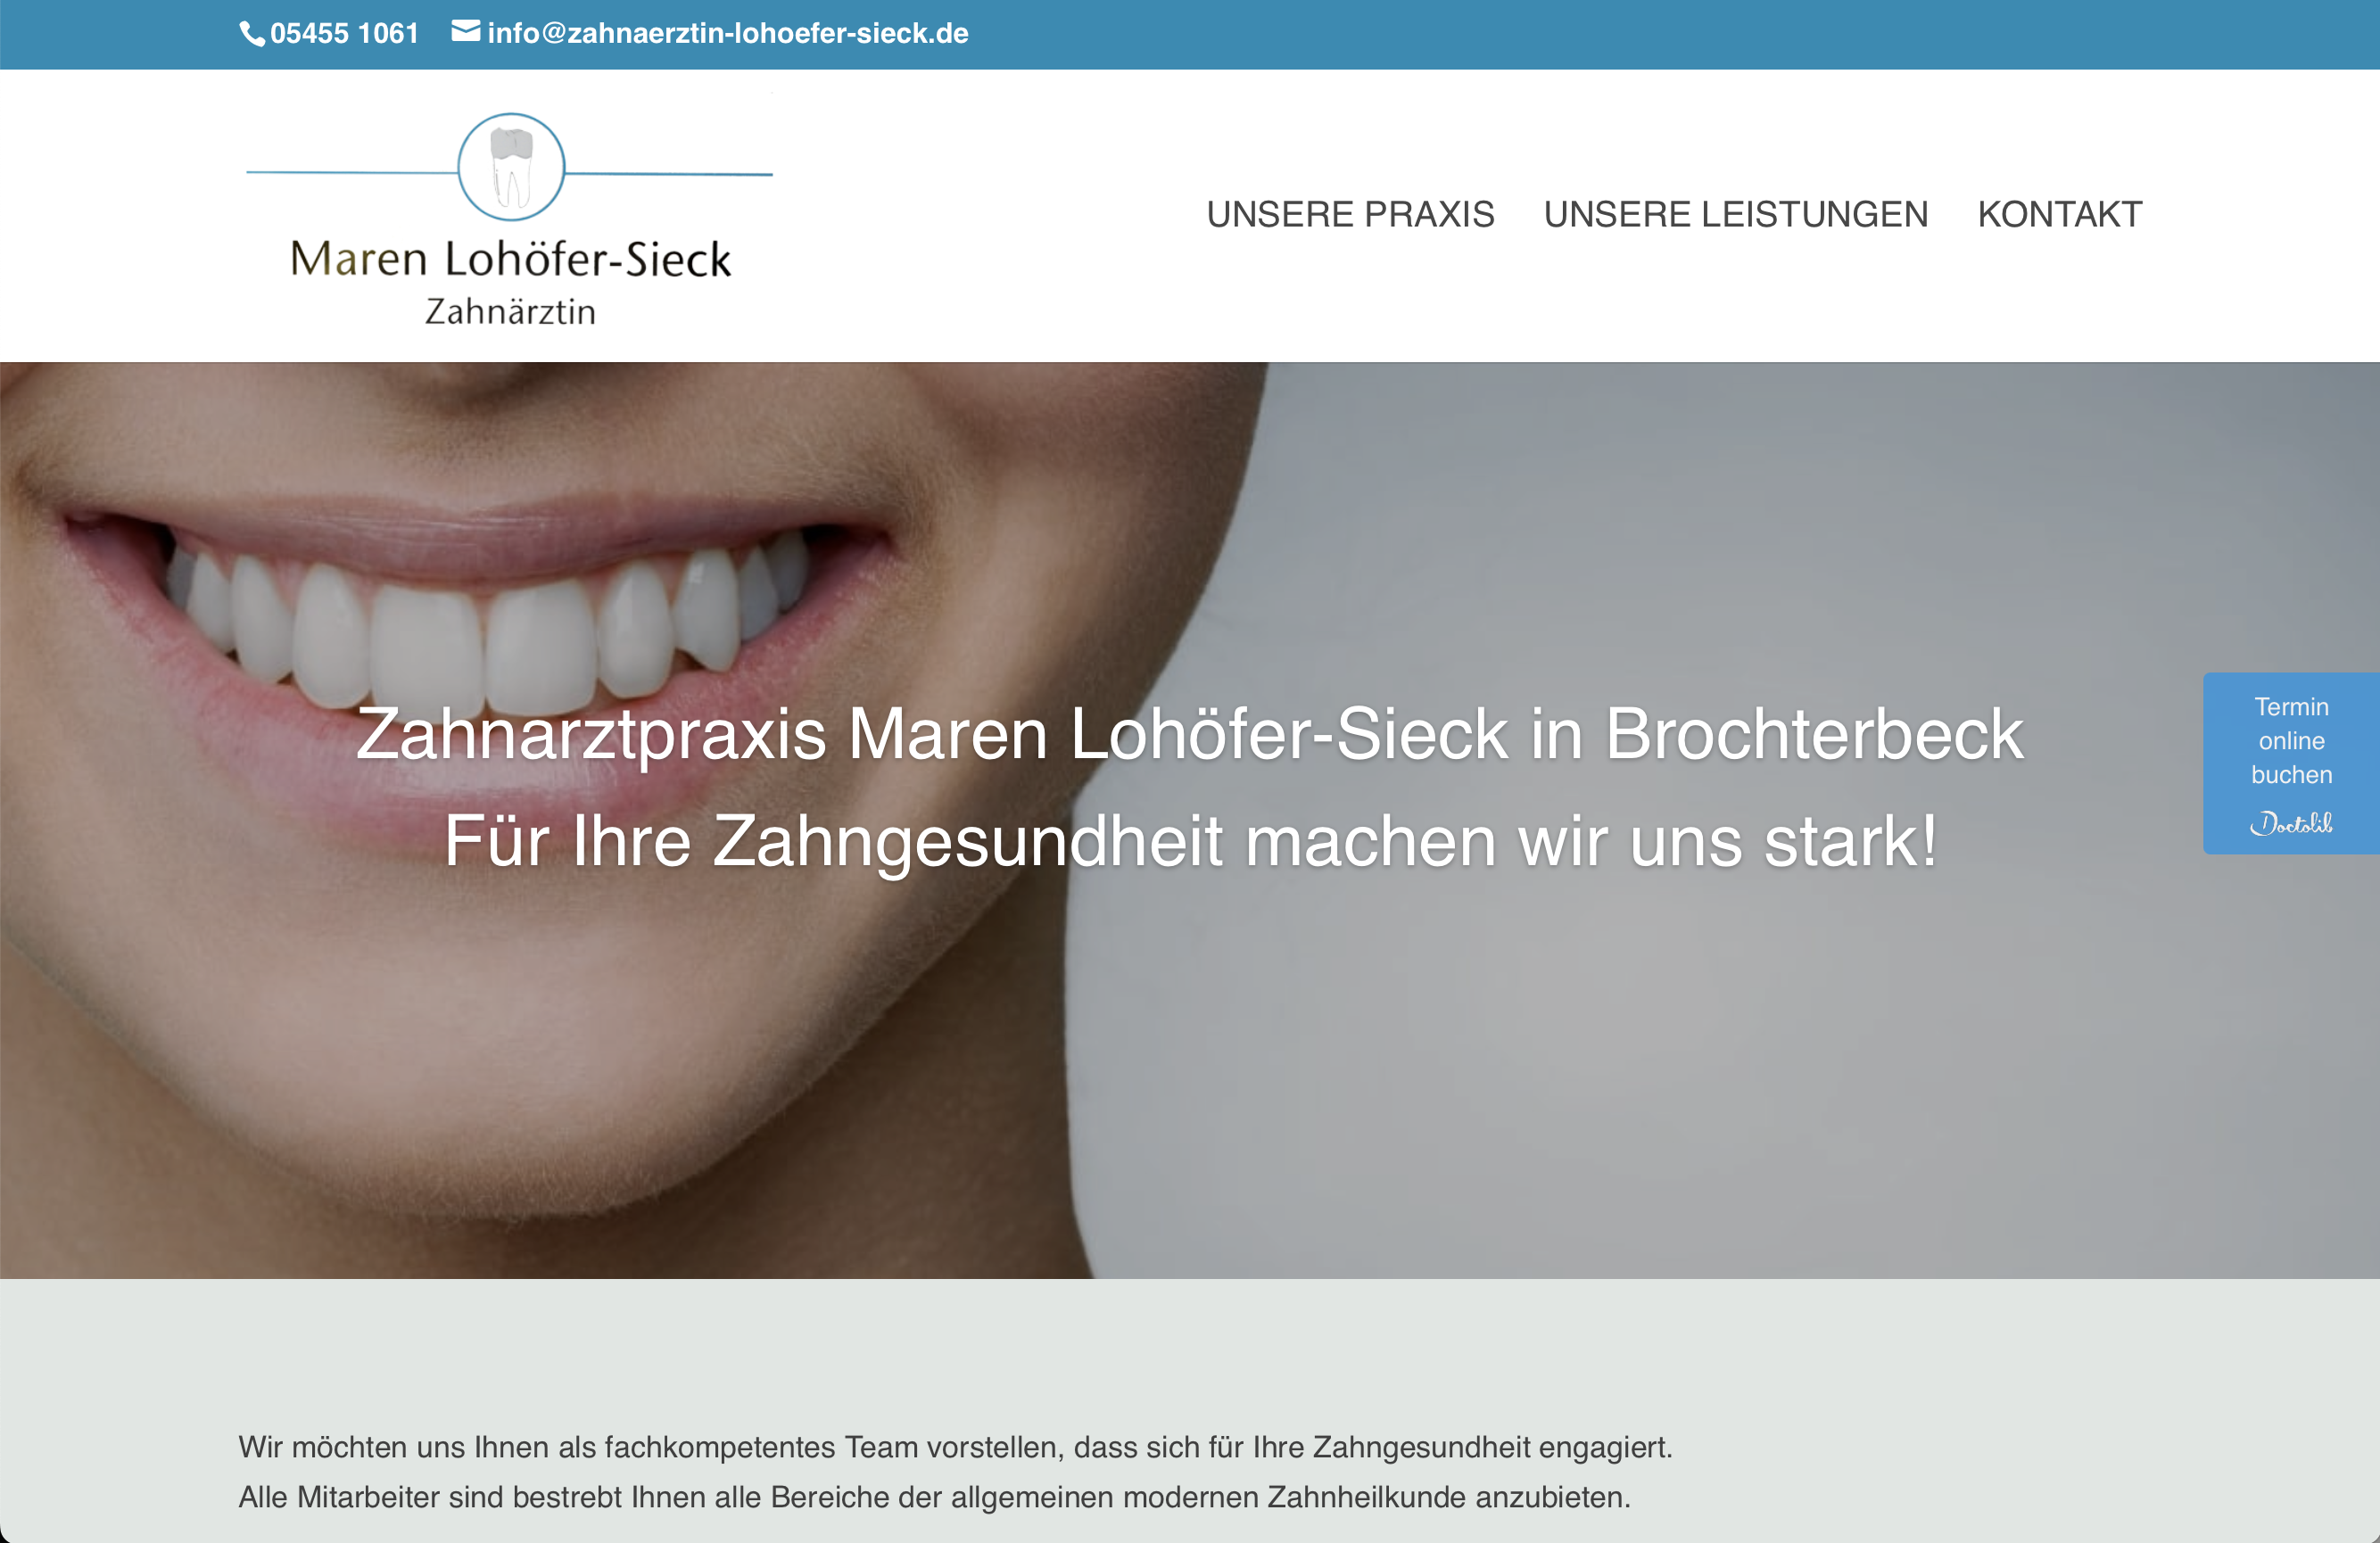 Zahnarztpraxis Maren Lohöfer-Sieck in Brochterbeck